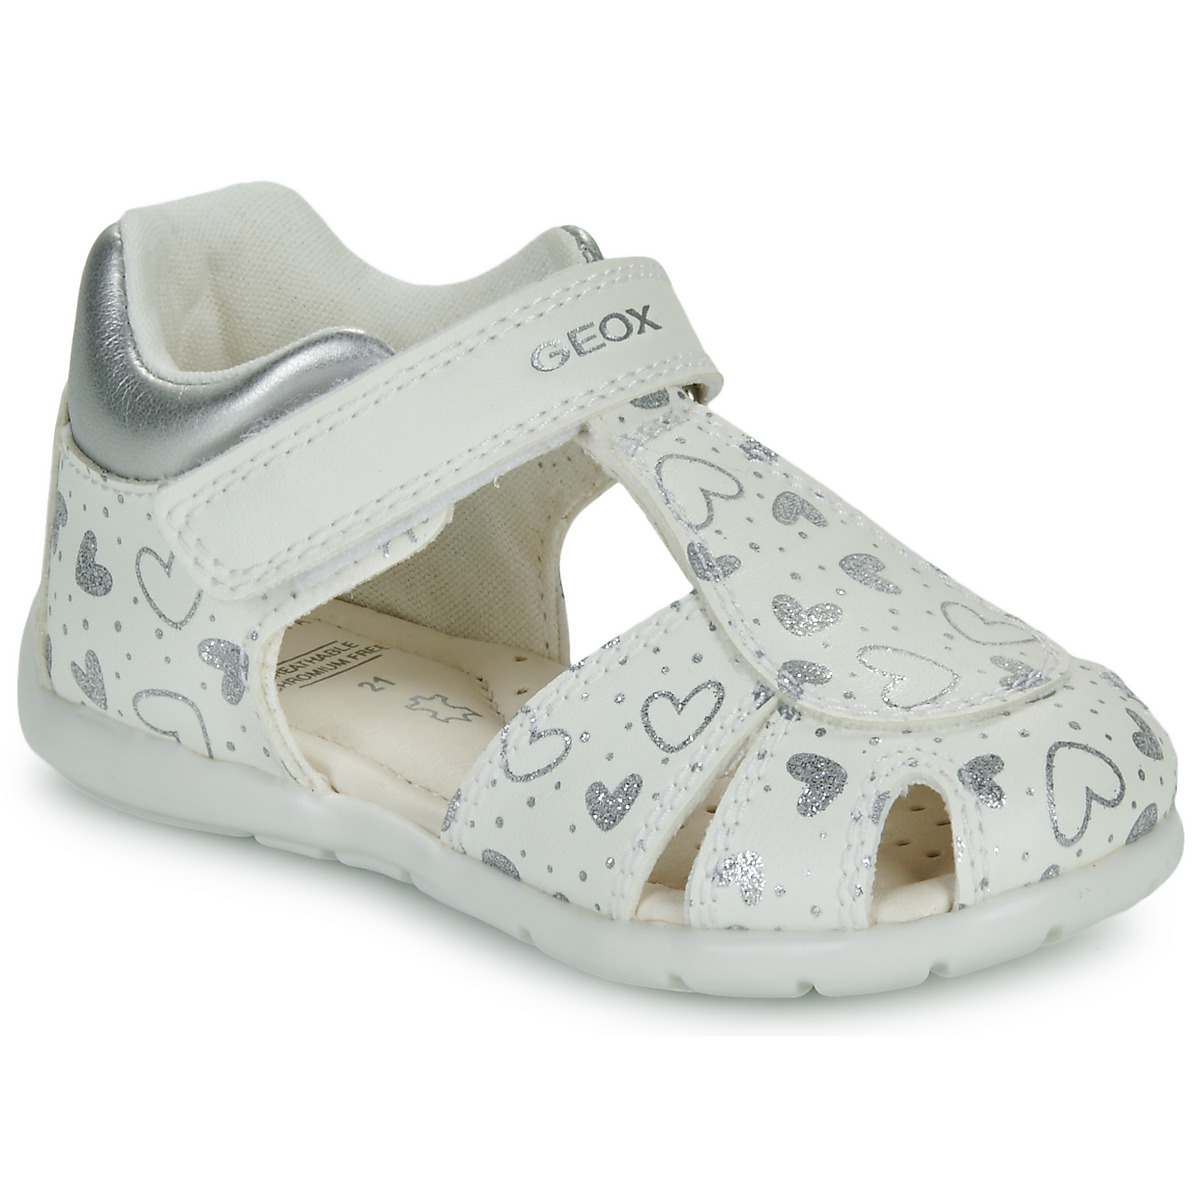 Chaussures Fille Sandales et Nu-pieds Geox B ELTHAN GIRL Blanc / Argenté